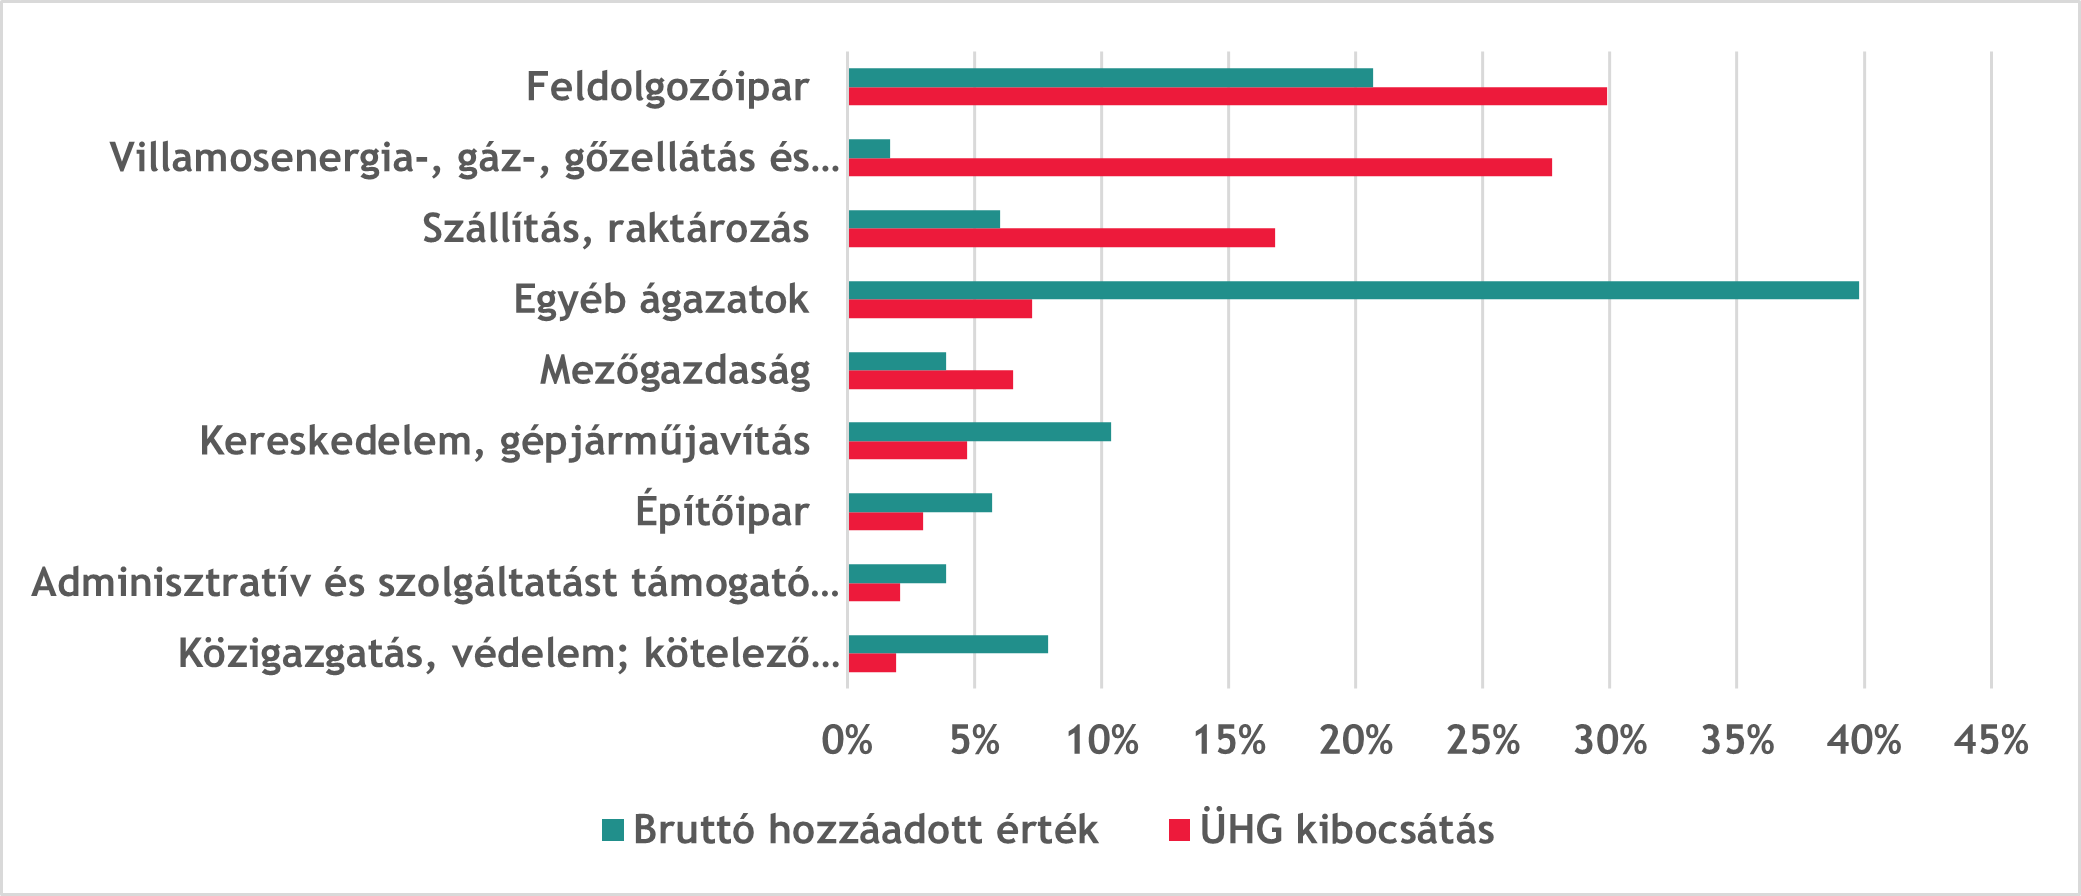 Hazai ágazatok ÜHG kibocsátása és nemzetgazdasági súlya (2019) Forrás: BDO szerkesztés EUROSTAT és KSH adatok alapján